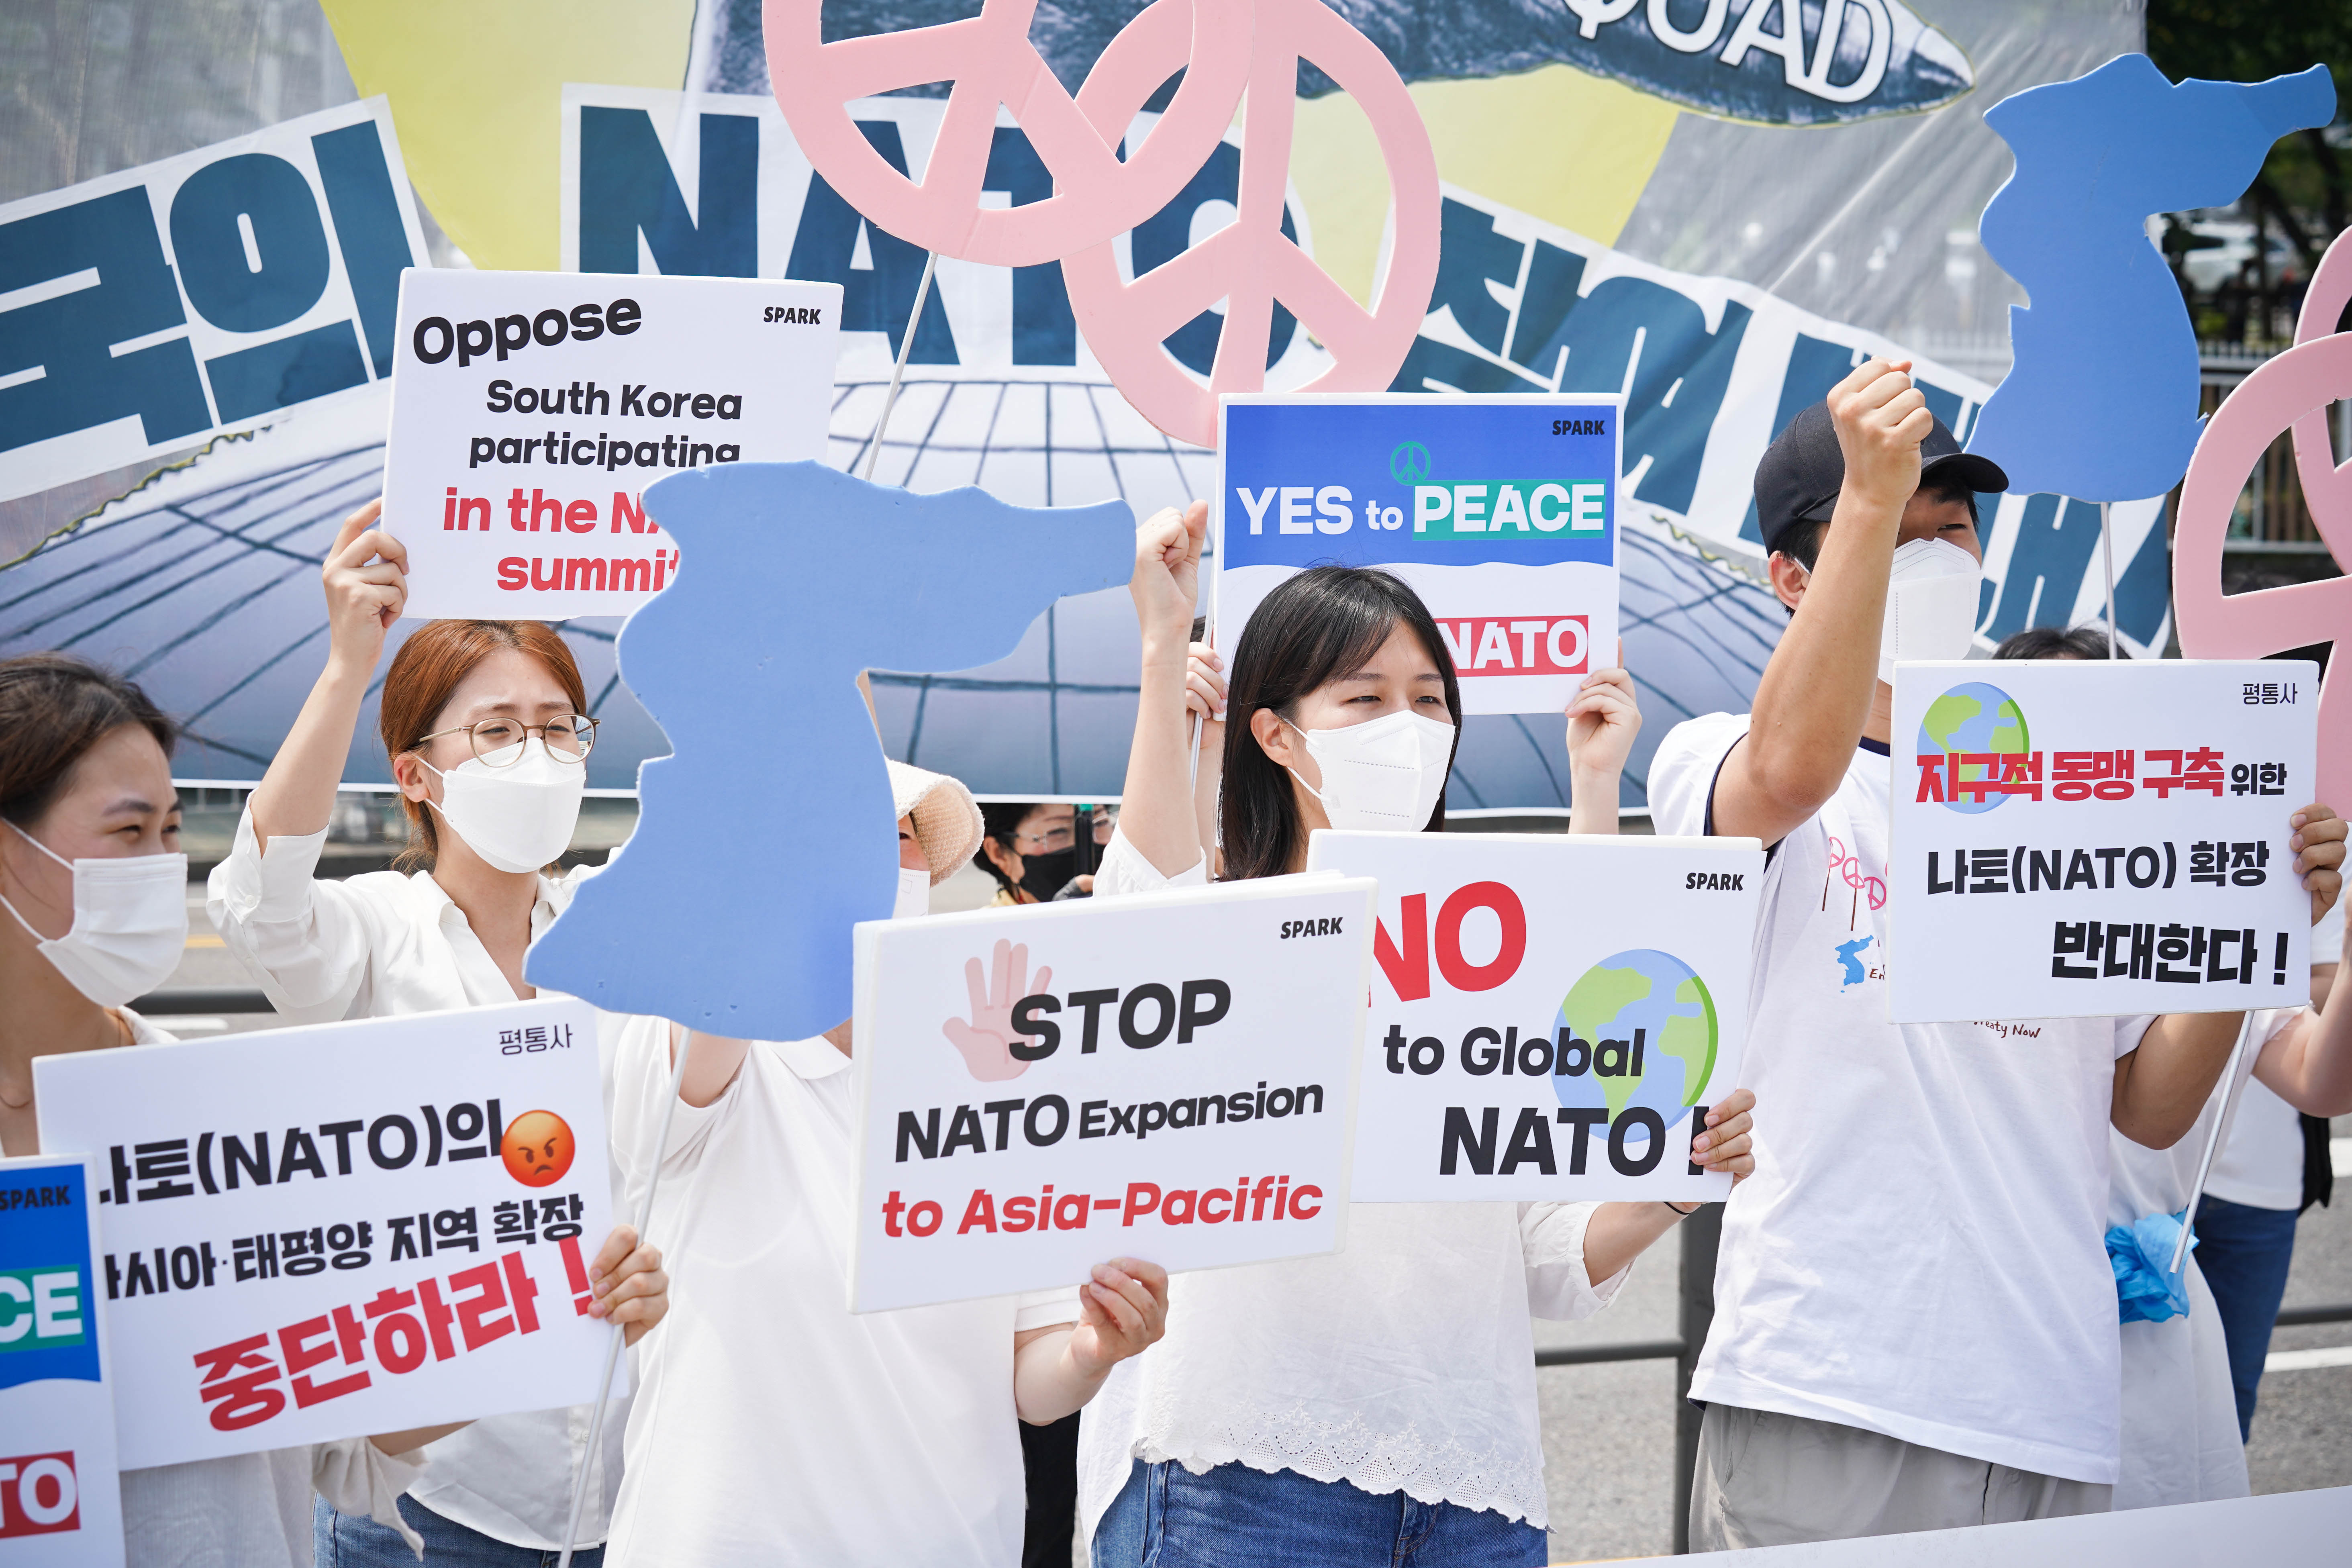 韩国民间团体抗议美国对韩国政府实施窃听及监听_行为_集会_文件